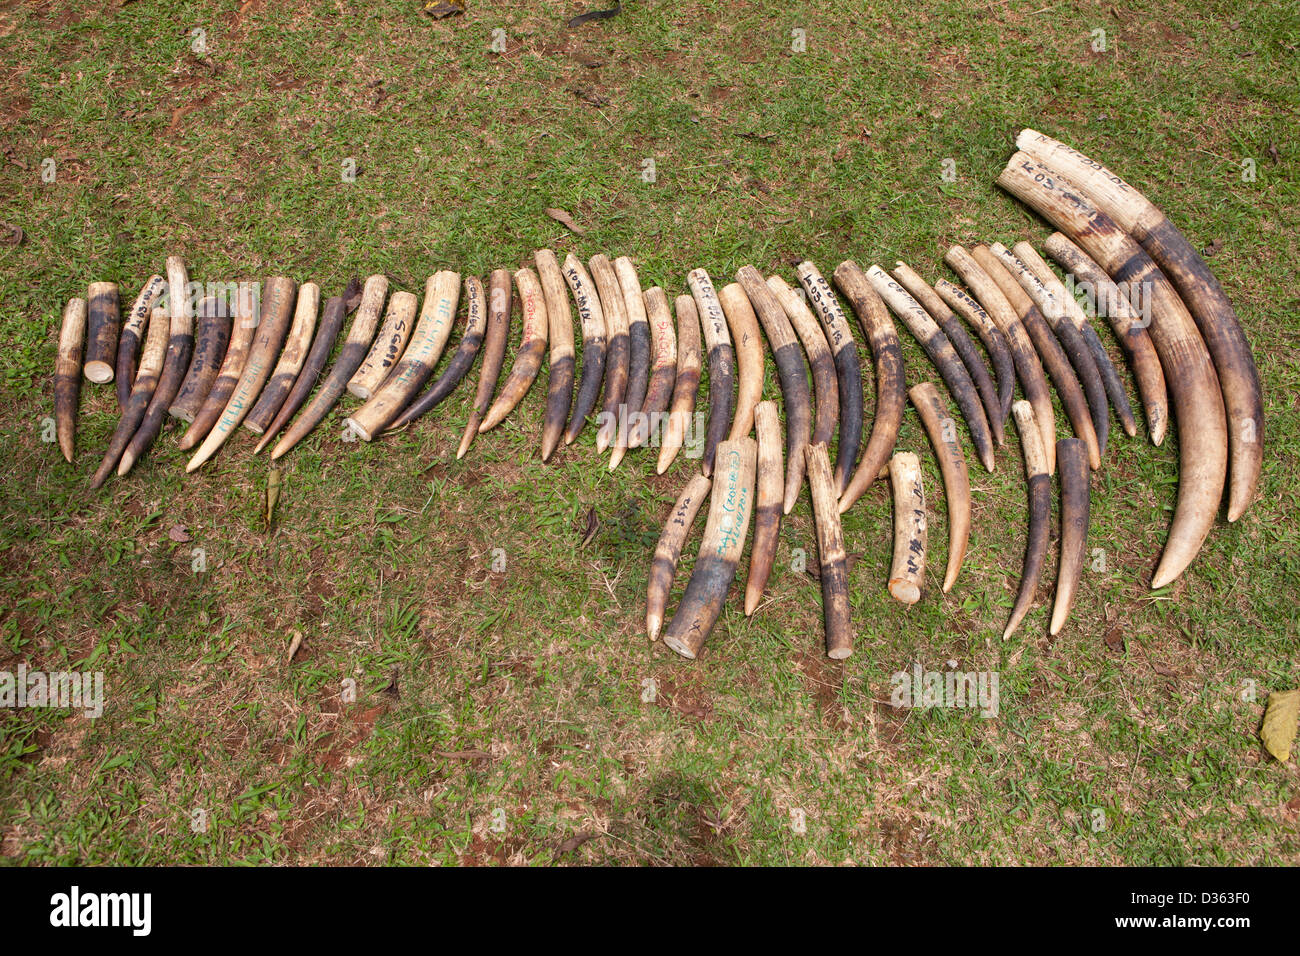 Camerún, 3 de octubre de 2012: el marfil confiscado por el Ministerio de Bosques y Vida Silvestre de los cazadores furtivos y celebrado en la tienda. Foto de stock